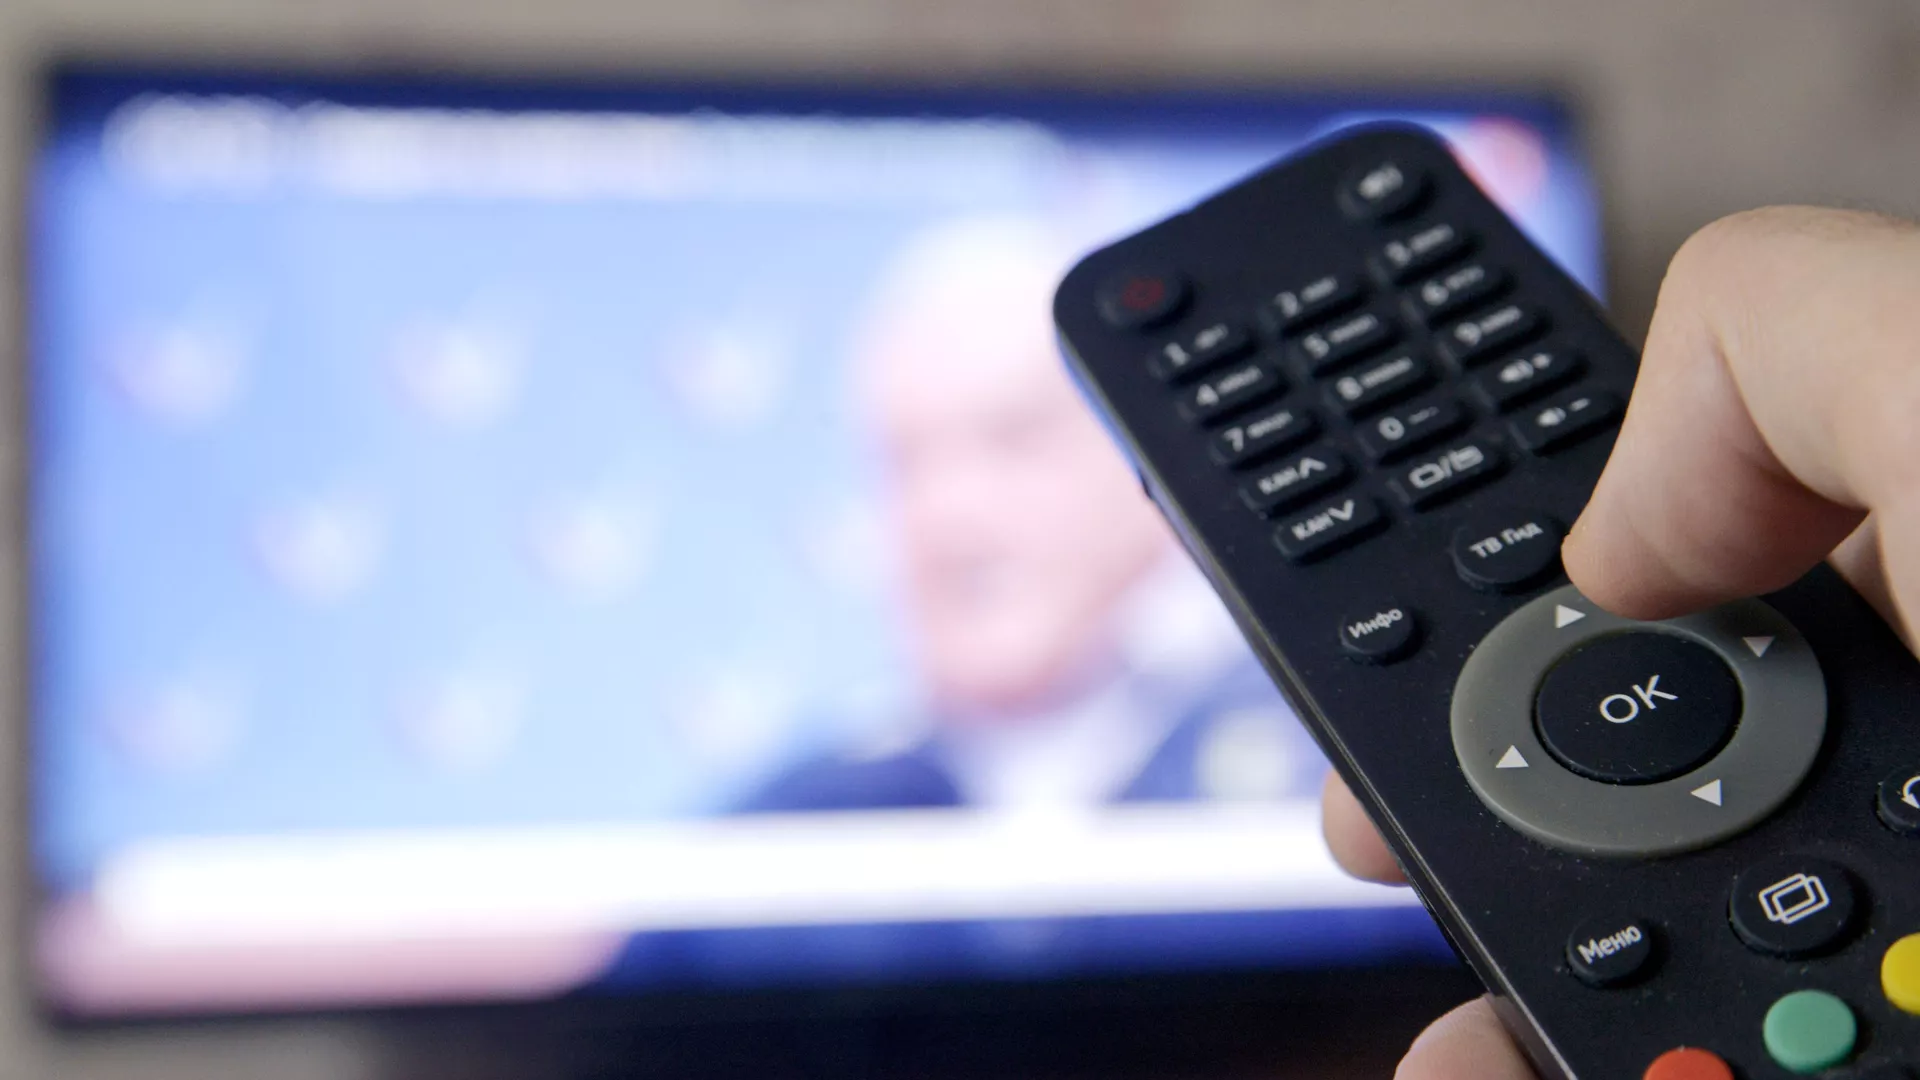 Հայաստանը հեռուստաալիքների կողմից համաձայնագրերի խախտման մասին ապացույցներ չի ներկայացրել. ՌԴ թվայնացման նախարարություն